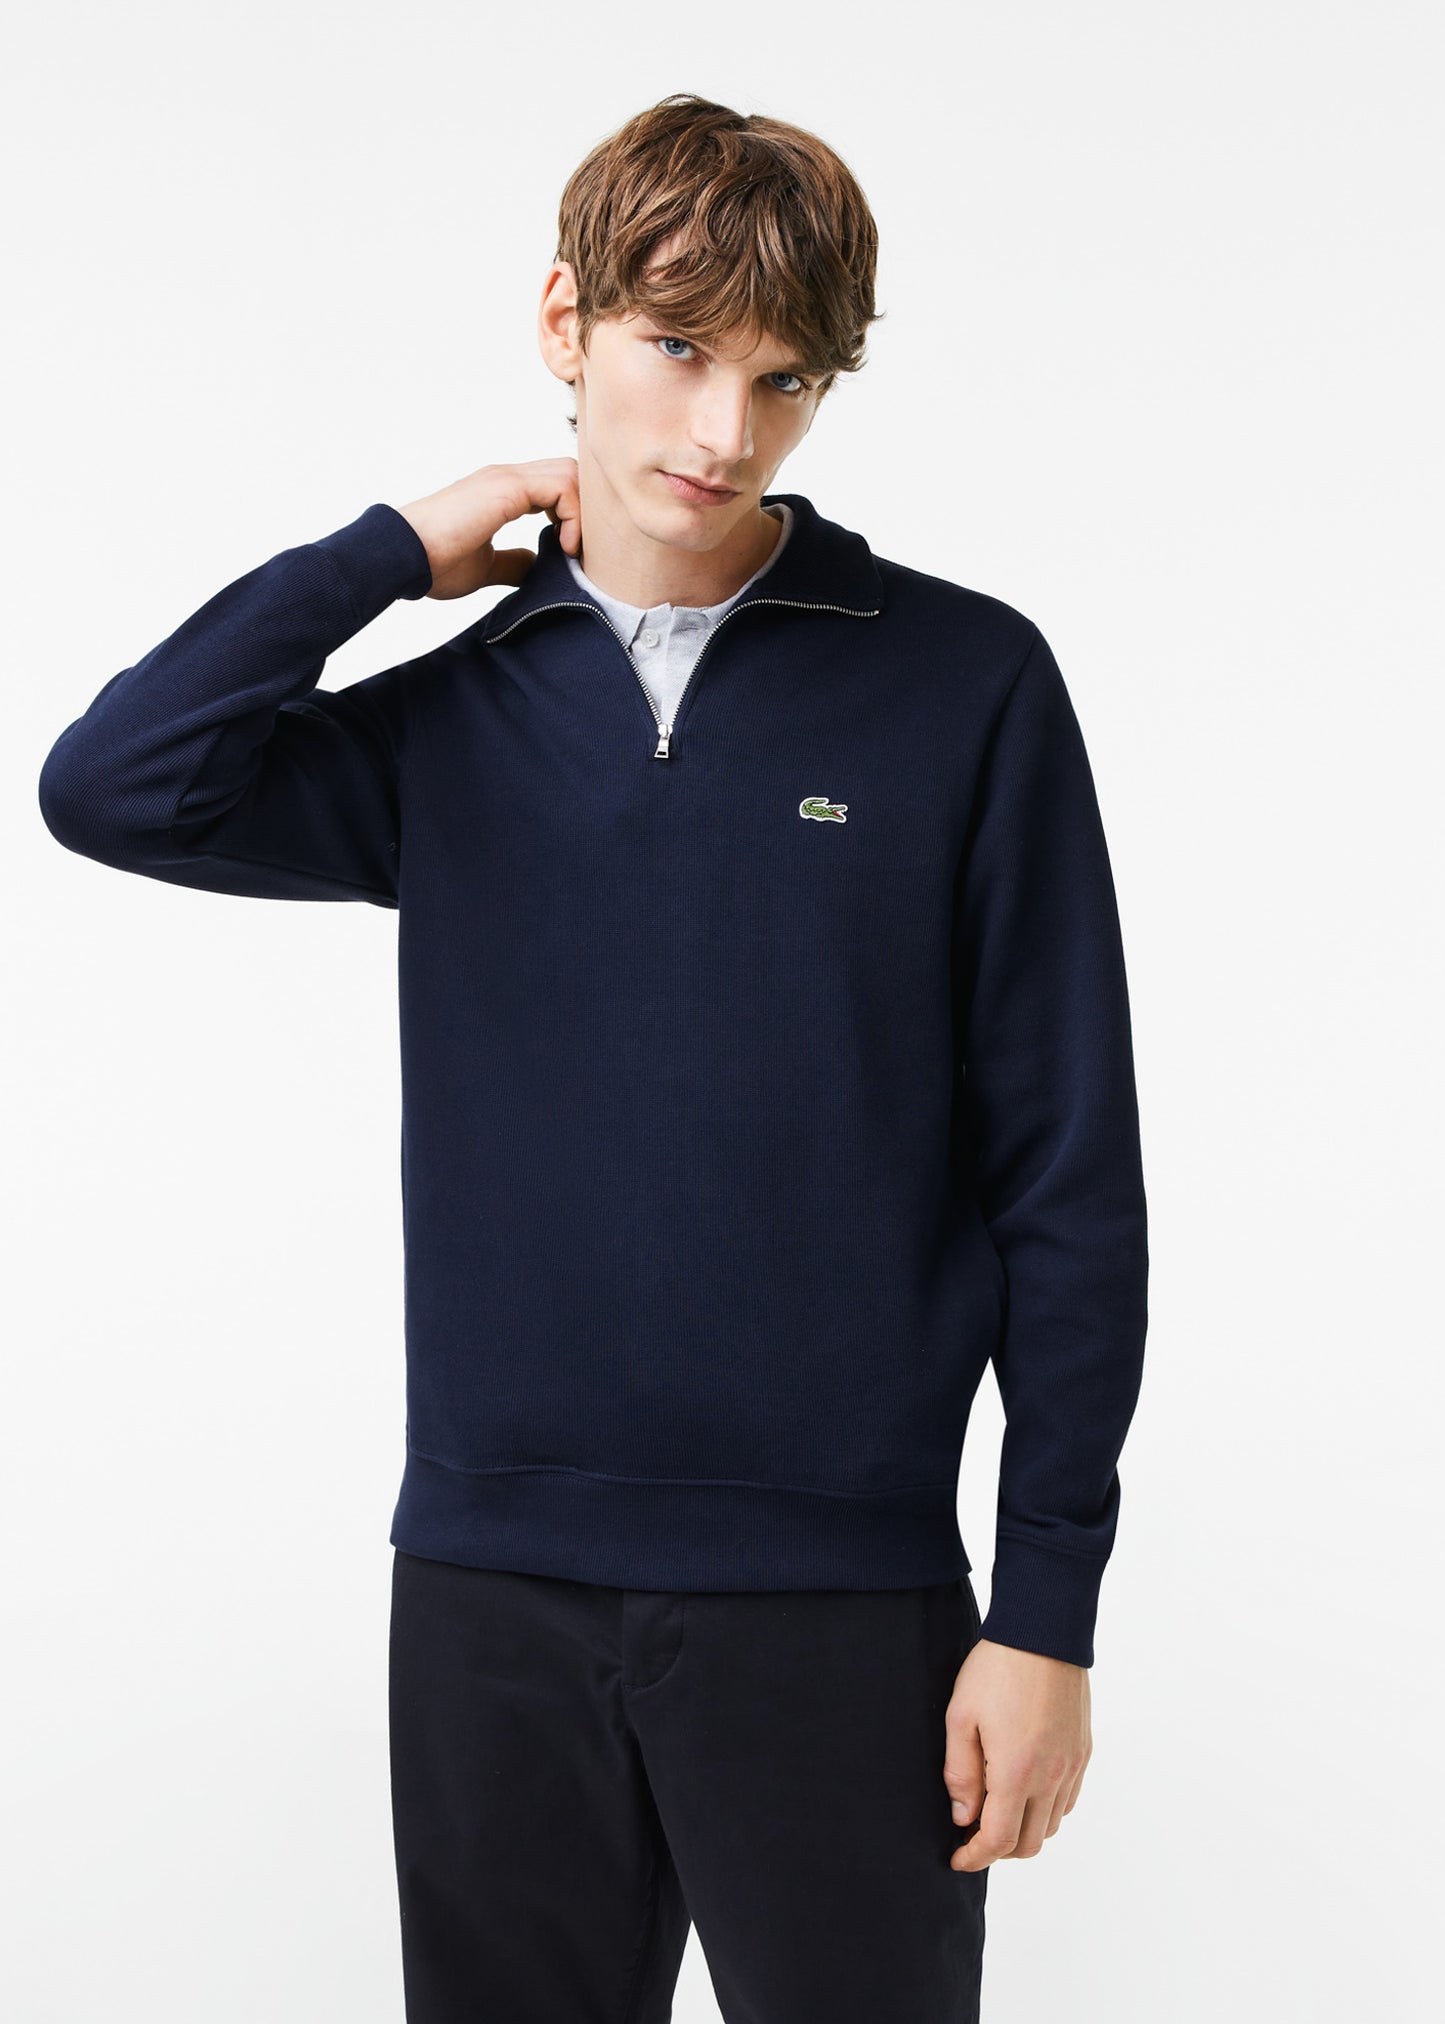 Sweater half zip - navy blue